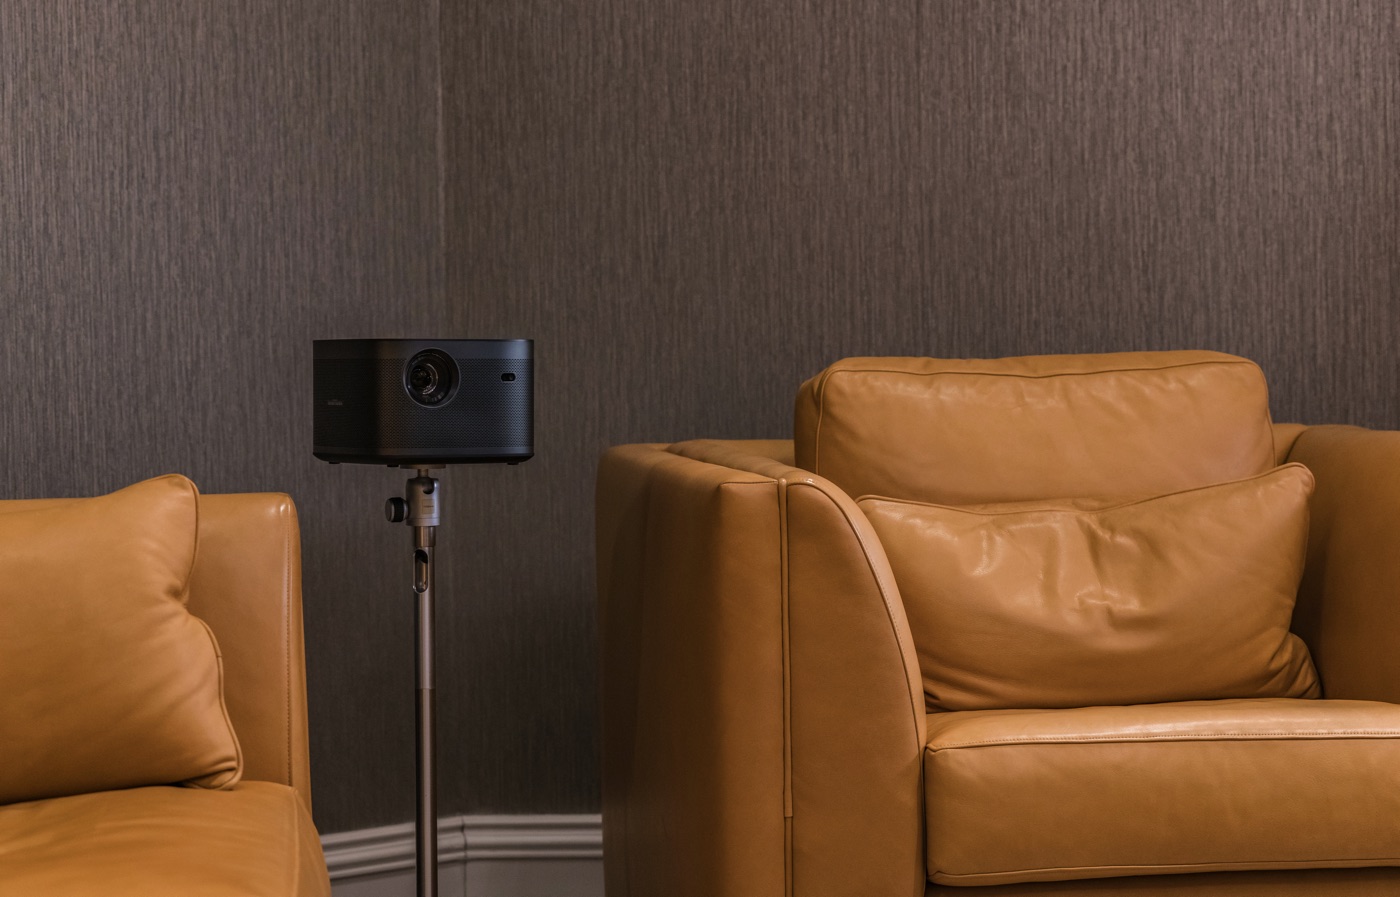 XGIMI Horizon e Horizon Pro 4K i potenti videoproiettori domestici per ogni angolo della casa